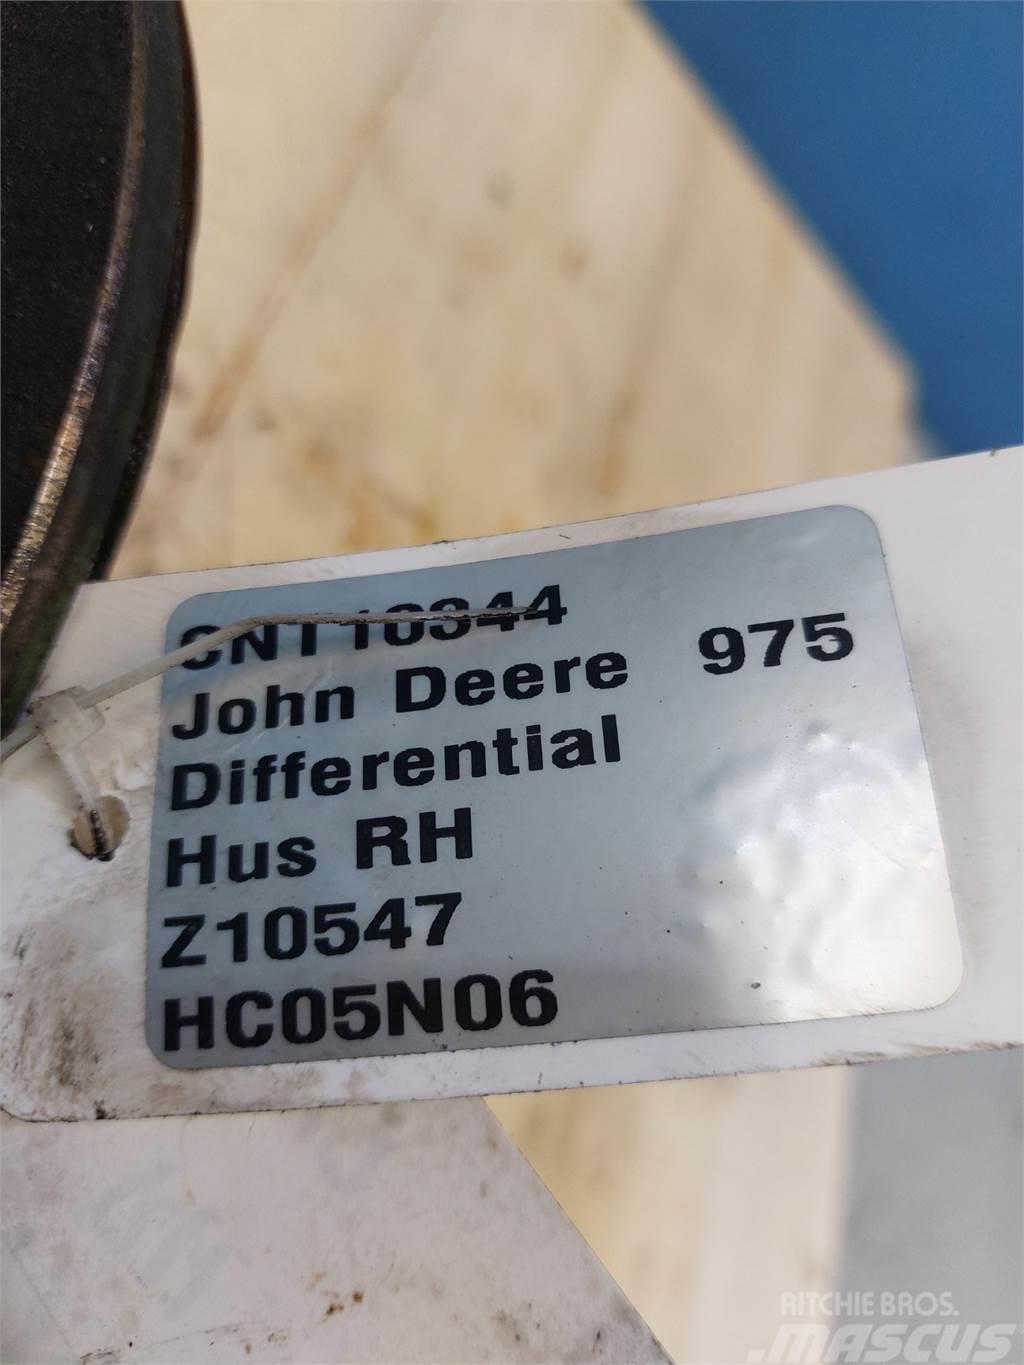 John Deere 975 Combine harvester accessories